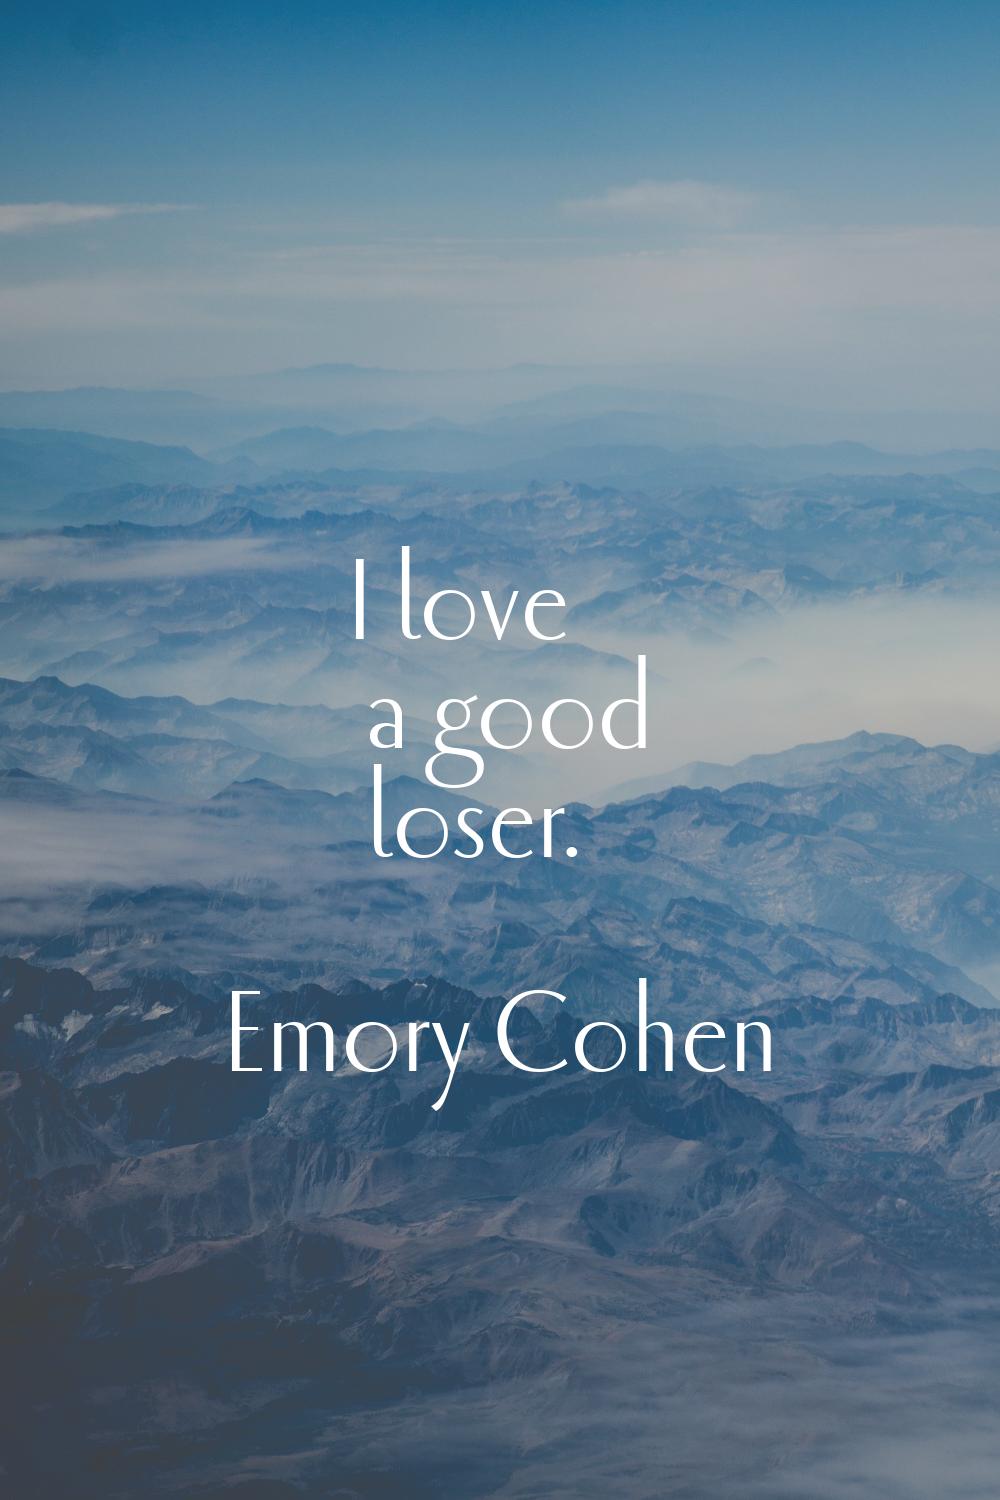 I love a good loser.